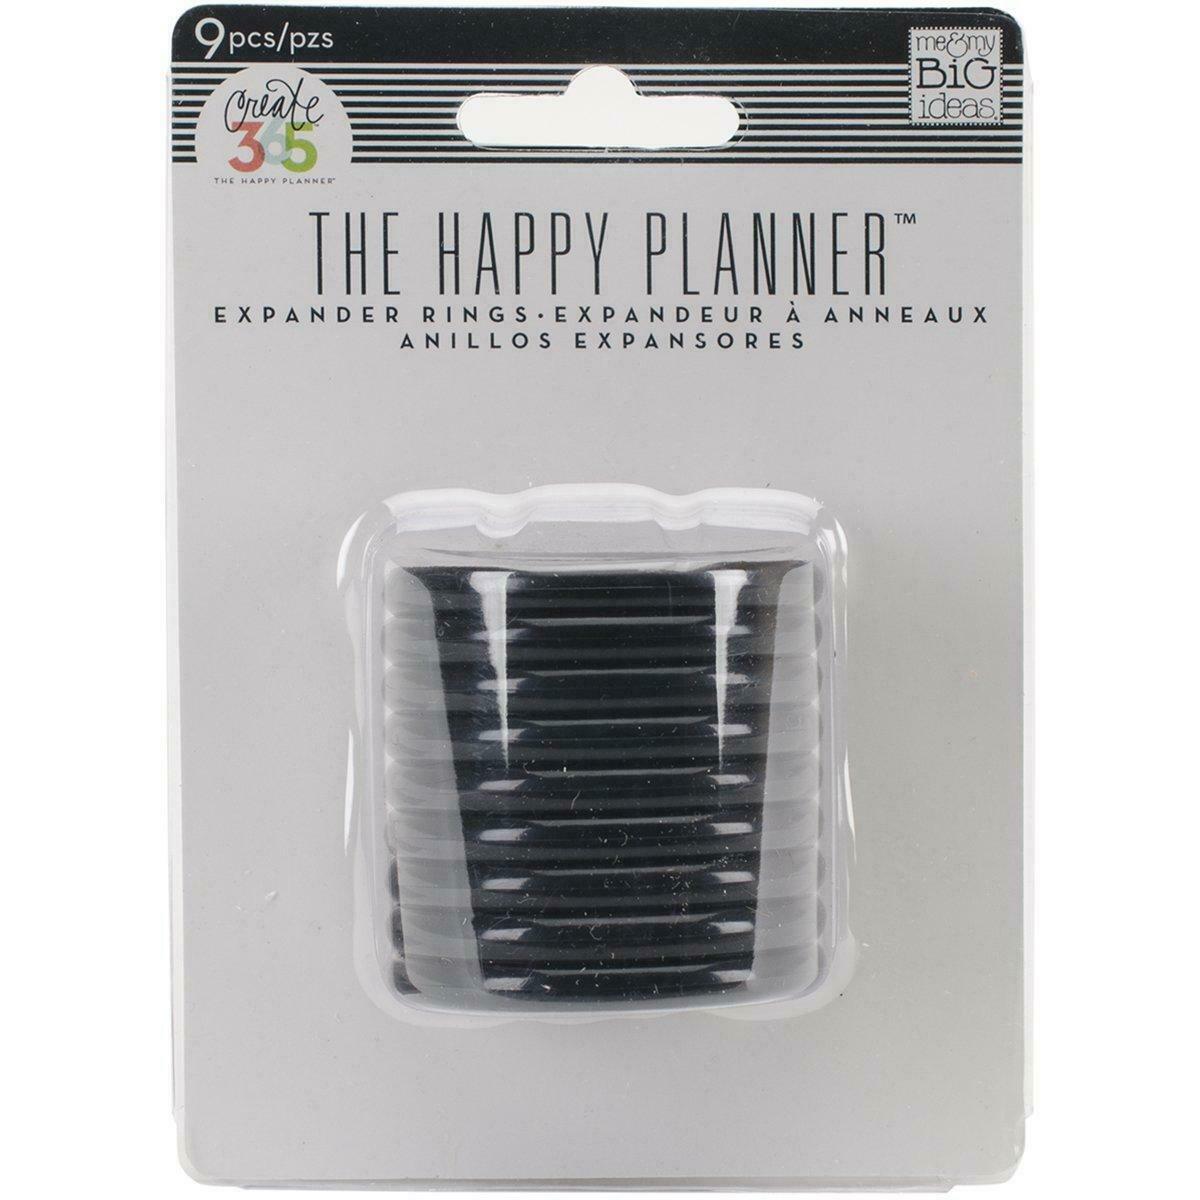 The Happy Planner 9 Pack Expander Rings Black - Medium 1.25"